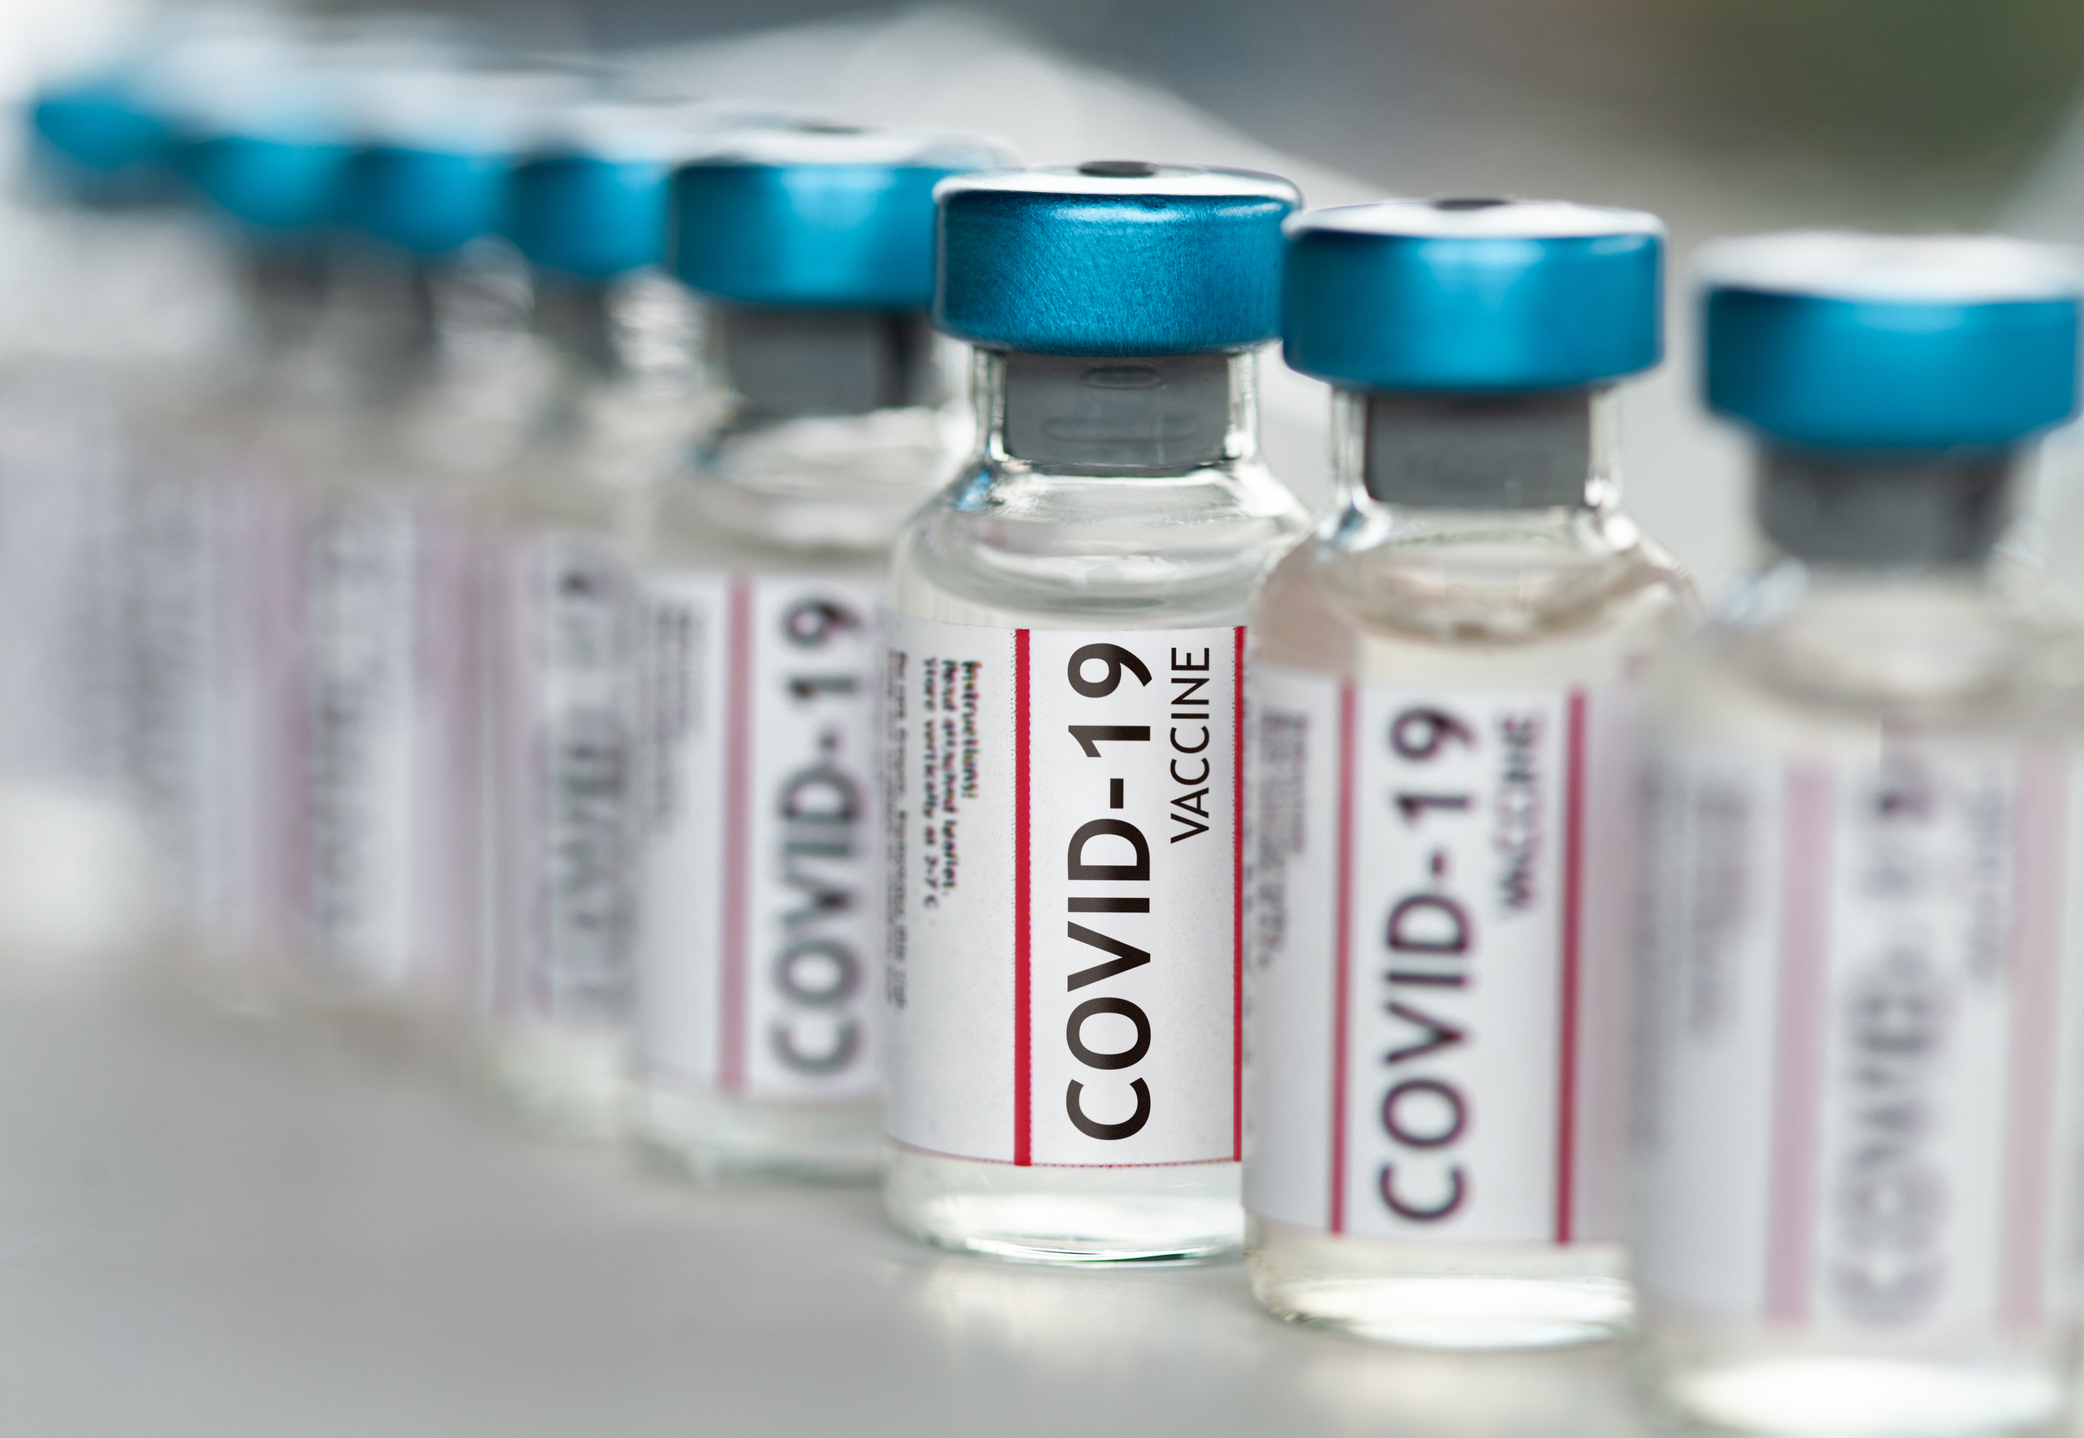 Un ministru belgian a dezvăluit lista secretă cu preţurile vaccinurilor împotriva Covid-19 plătite de UE